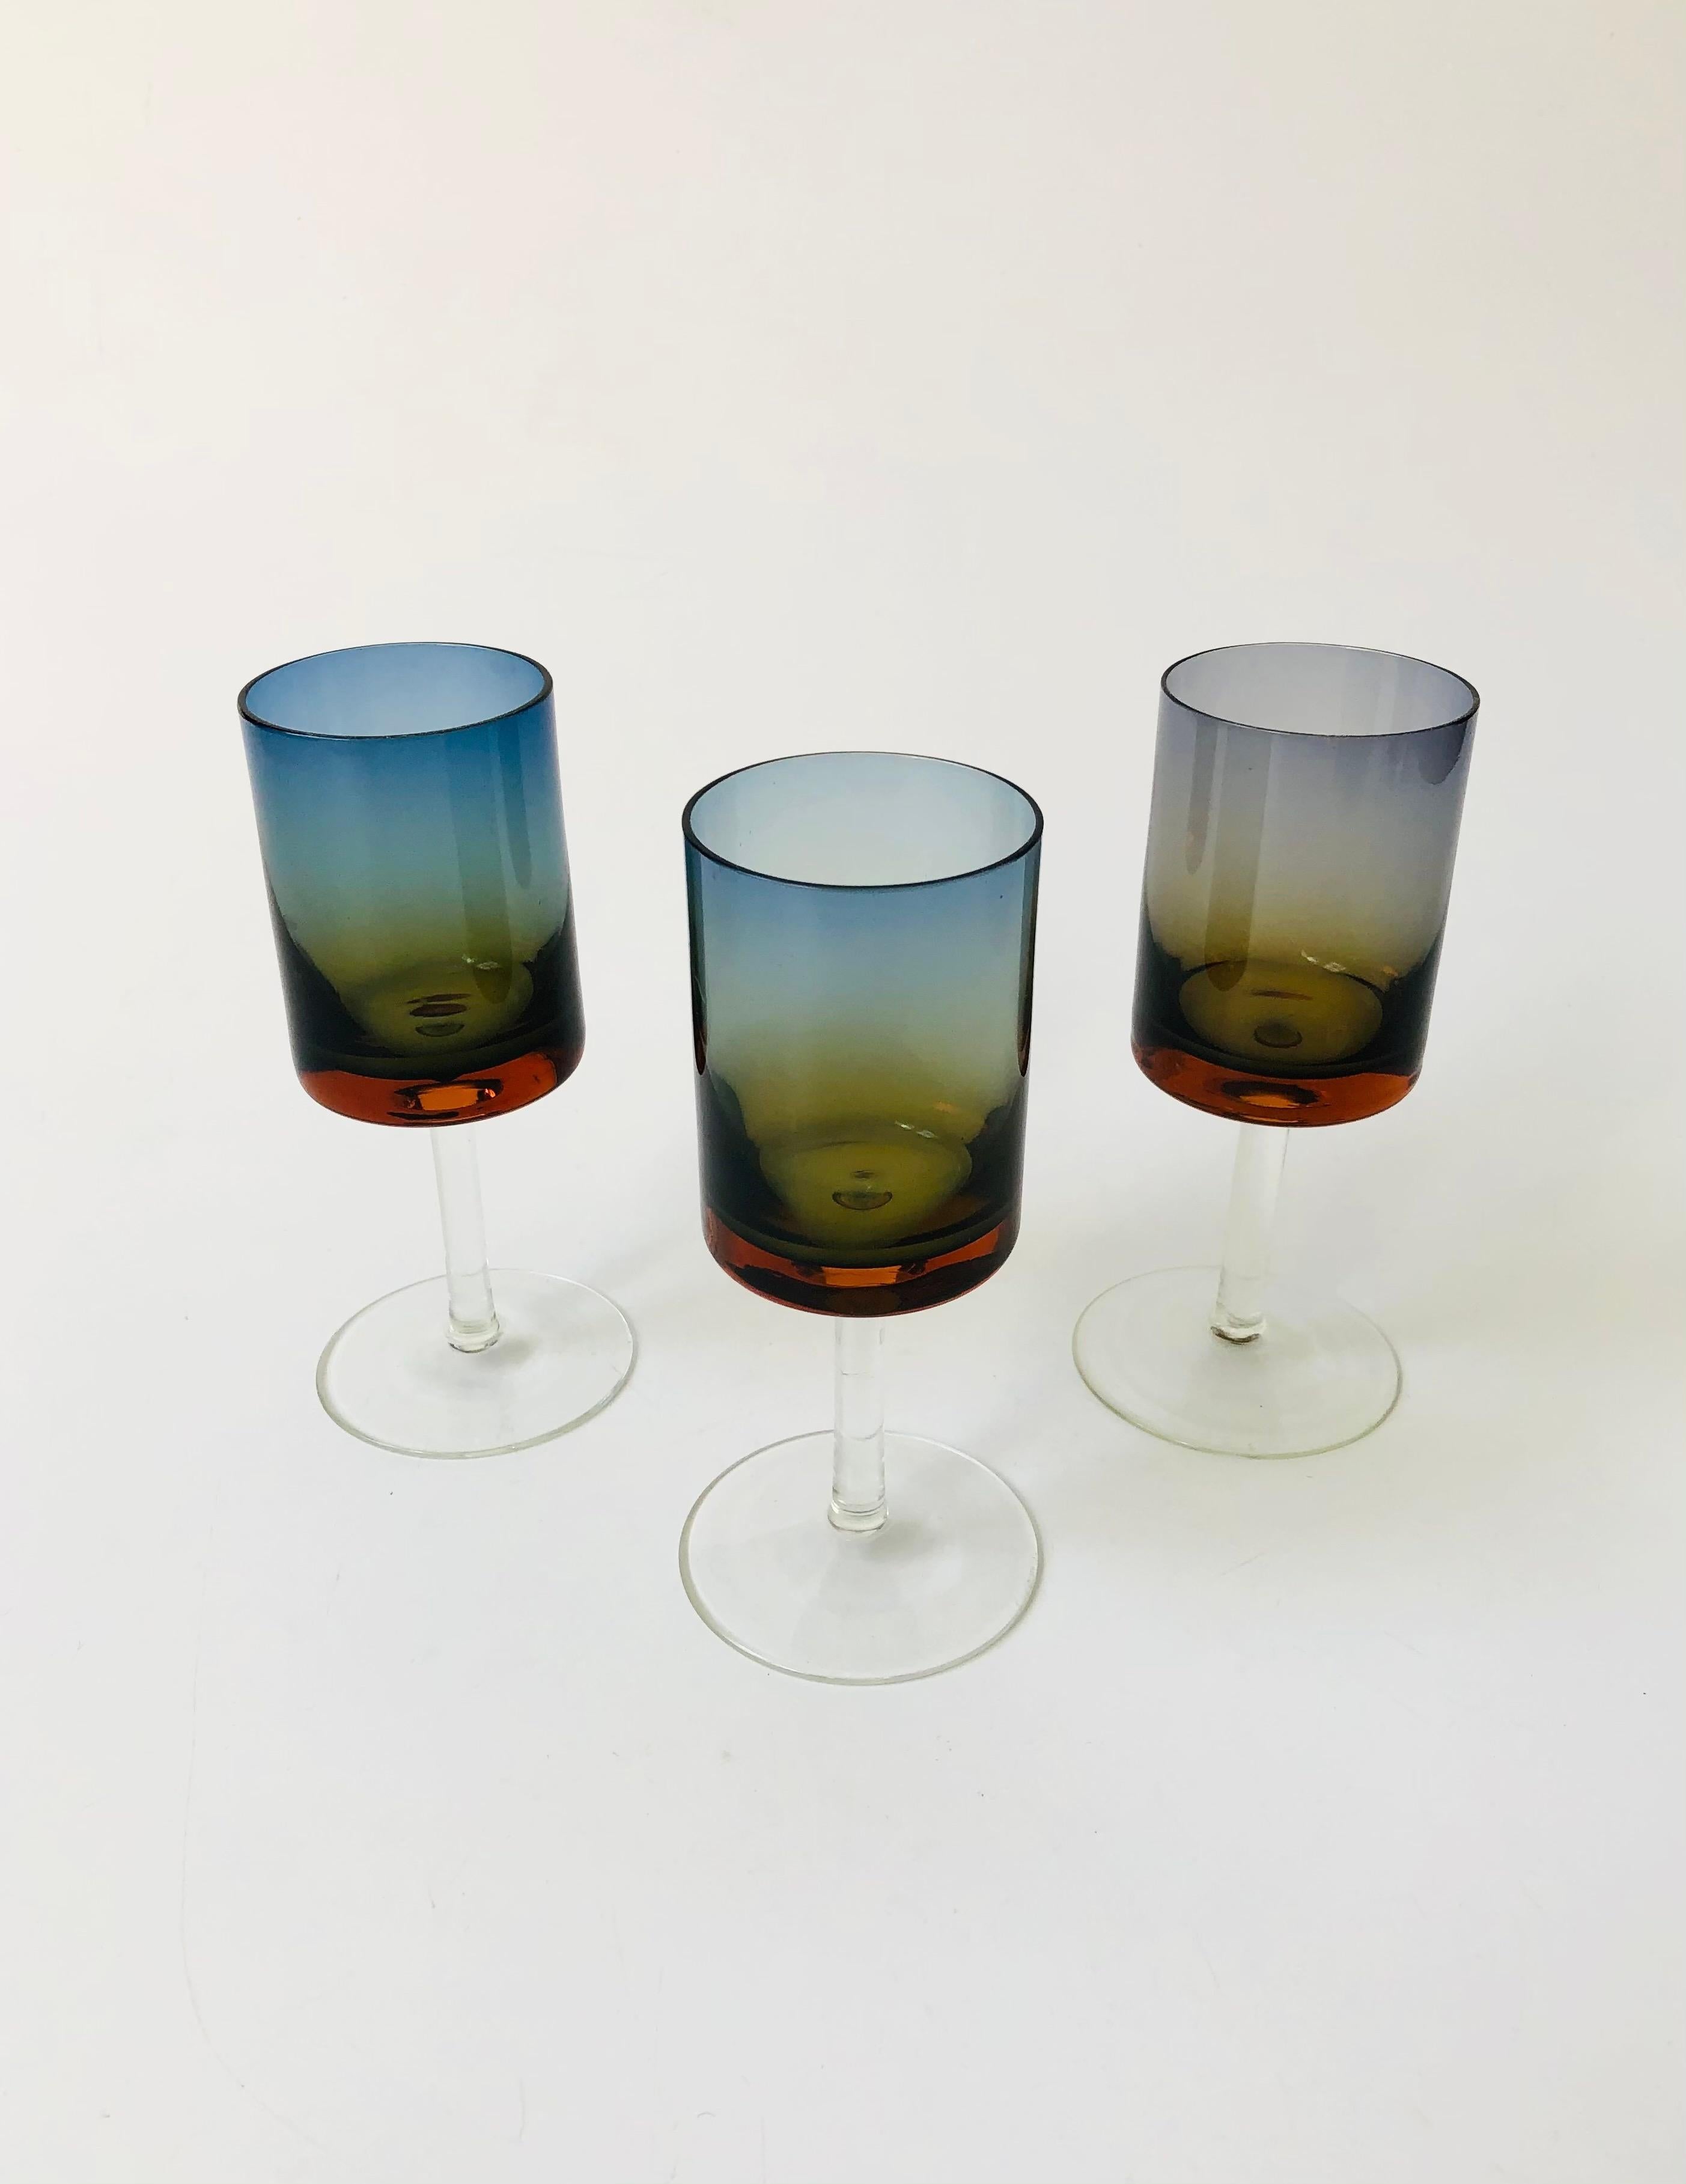 Un ensemble de 3 magnifiques verres à pied en Amberina bleu du milieu du siècle dernier. Chaque verre a une forme cylindrique avec une fine tige transparente. Belle coloration des sommets qui passent du bleu à l'ambre. Ces verres sont plus petits